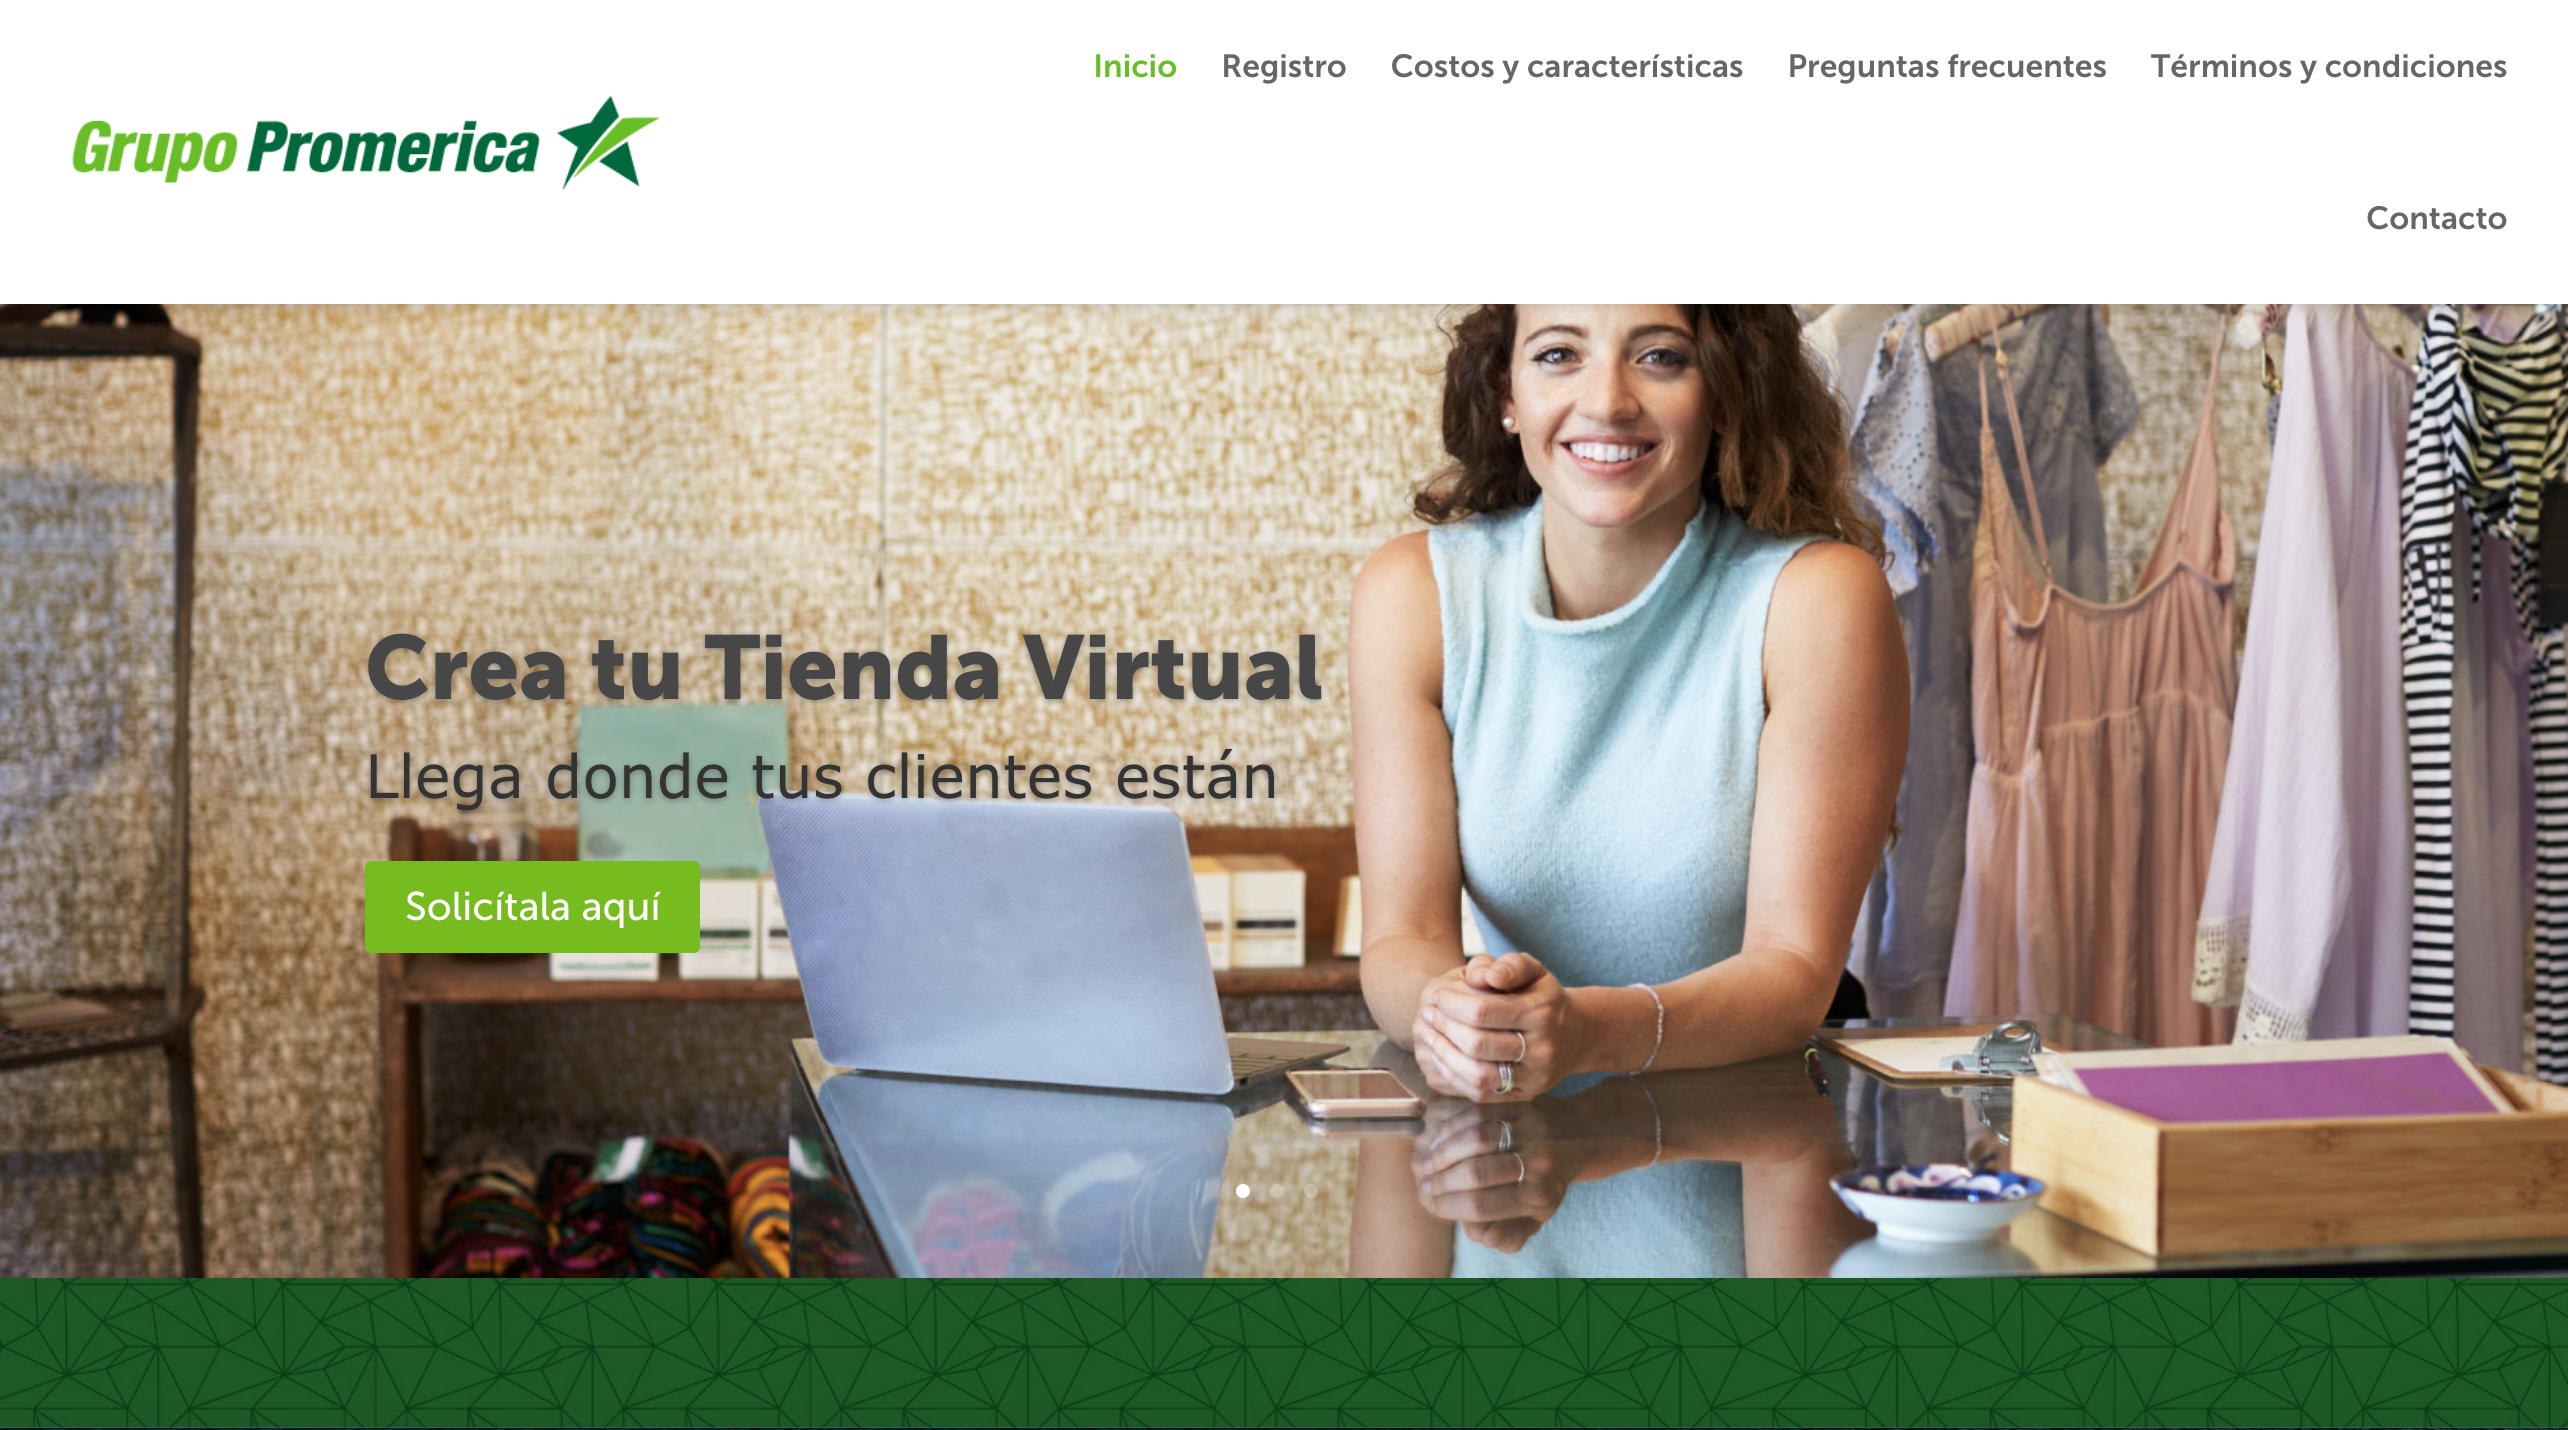 Banco Promerica Costa Rica lanza “Clientes Virtuales”, plataforma para que las empresas desarrollen su tienda en línea